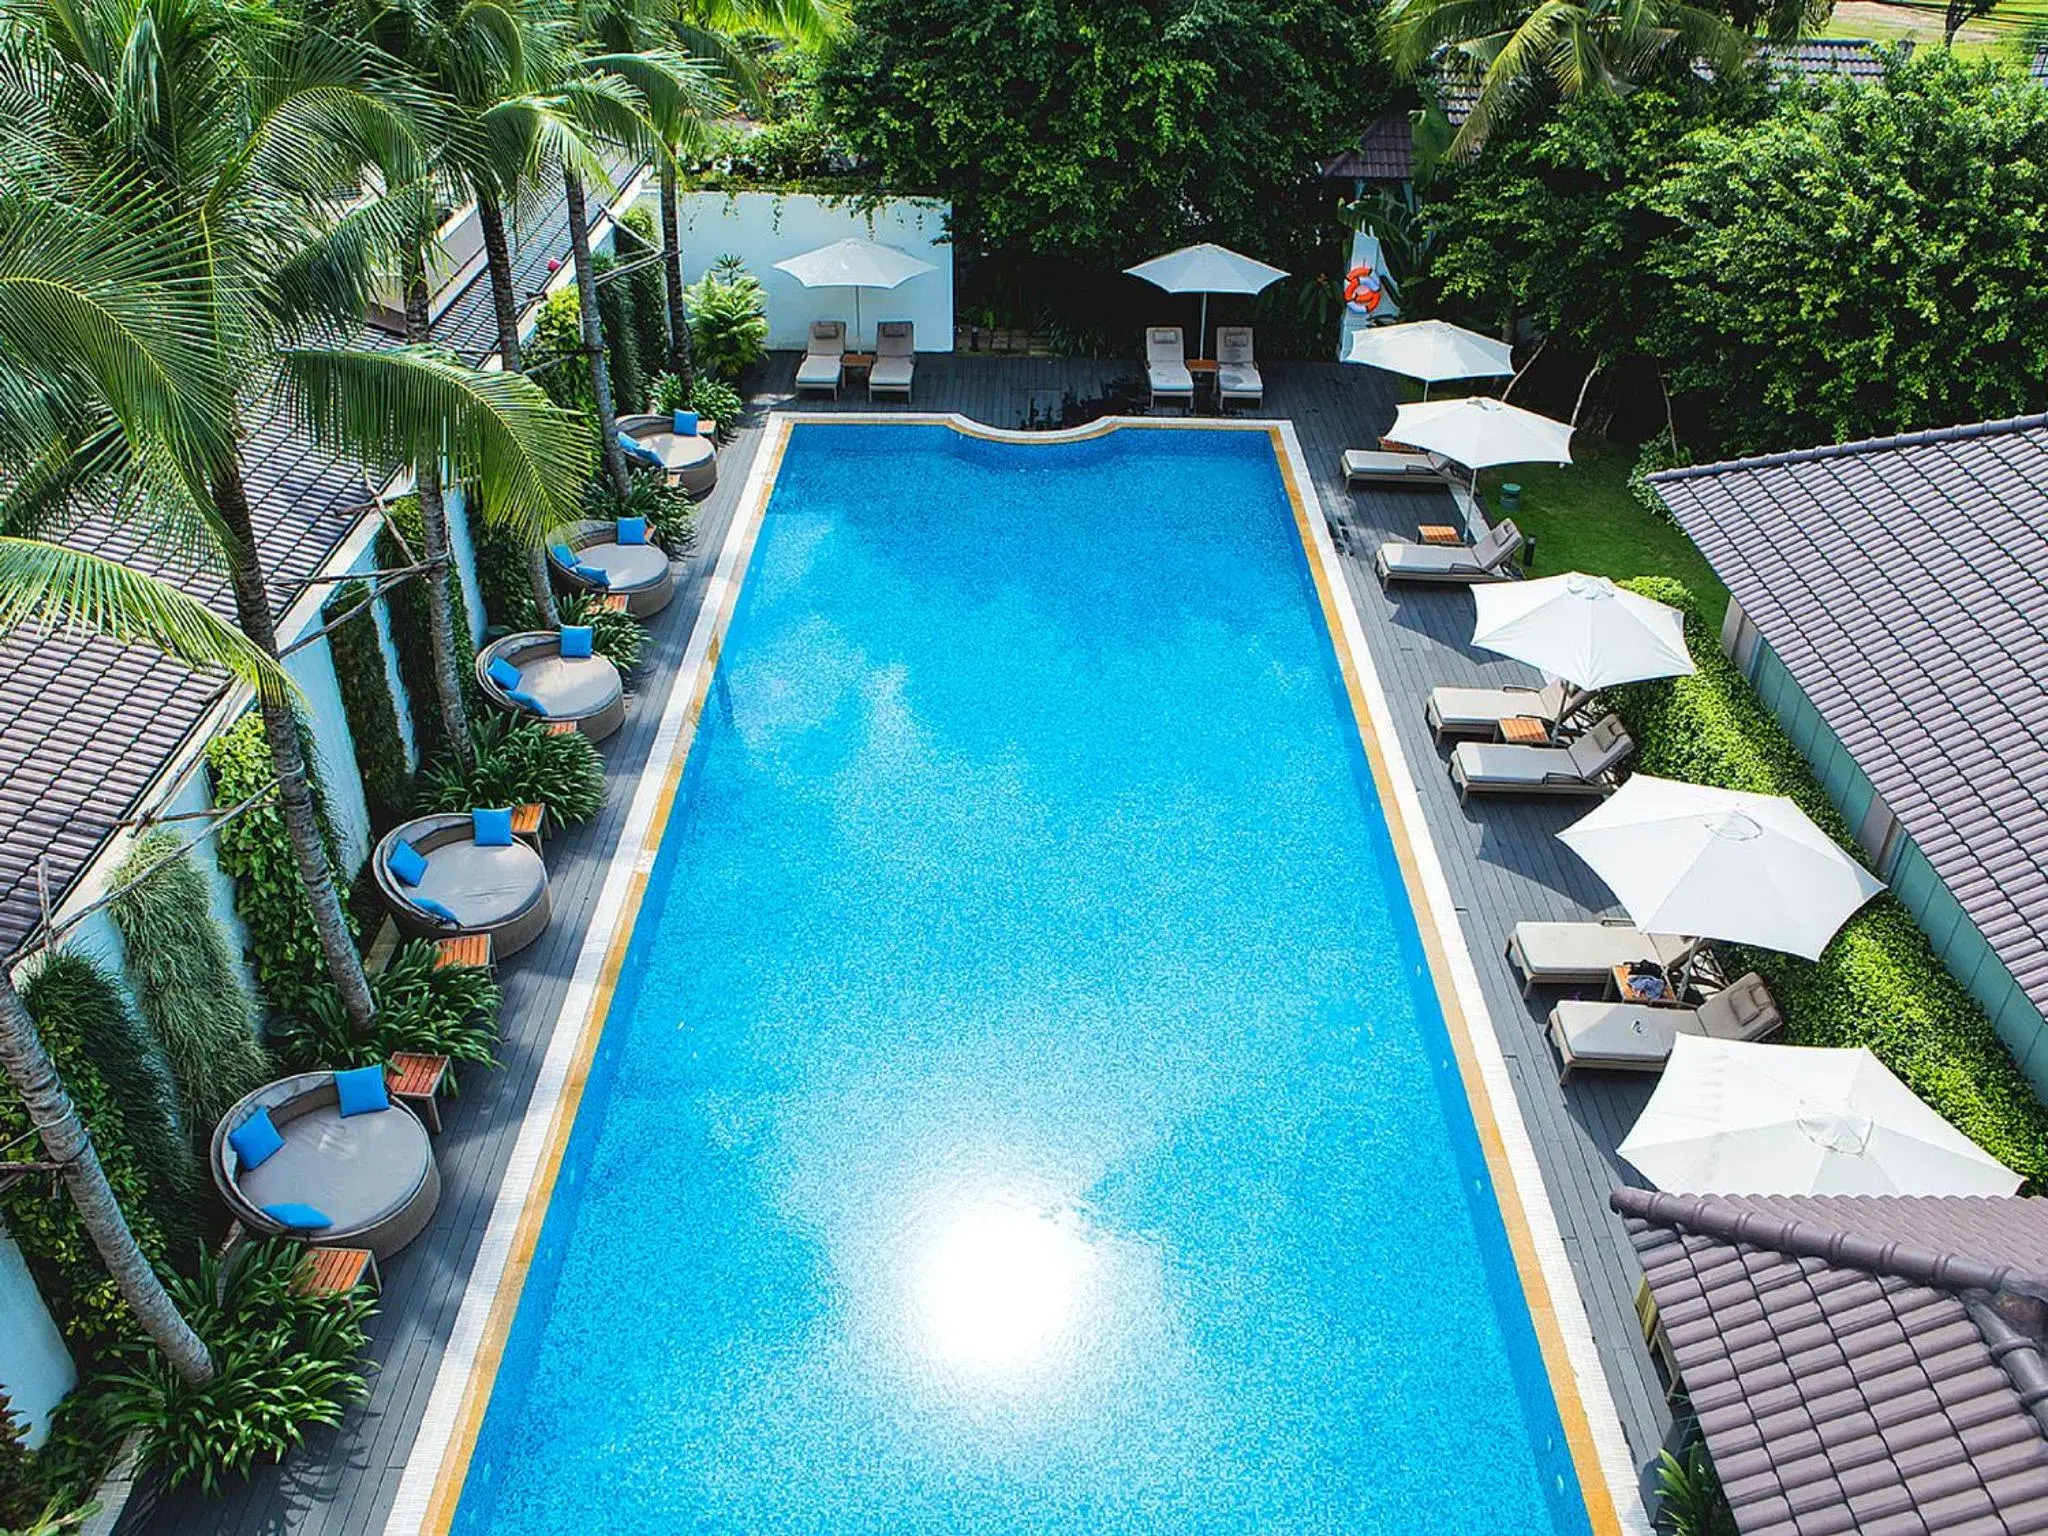 Pool View in Villa Song Saigon (Saigon River Villa)